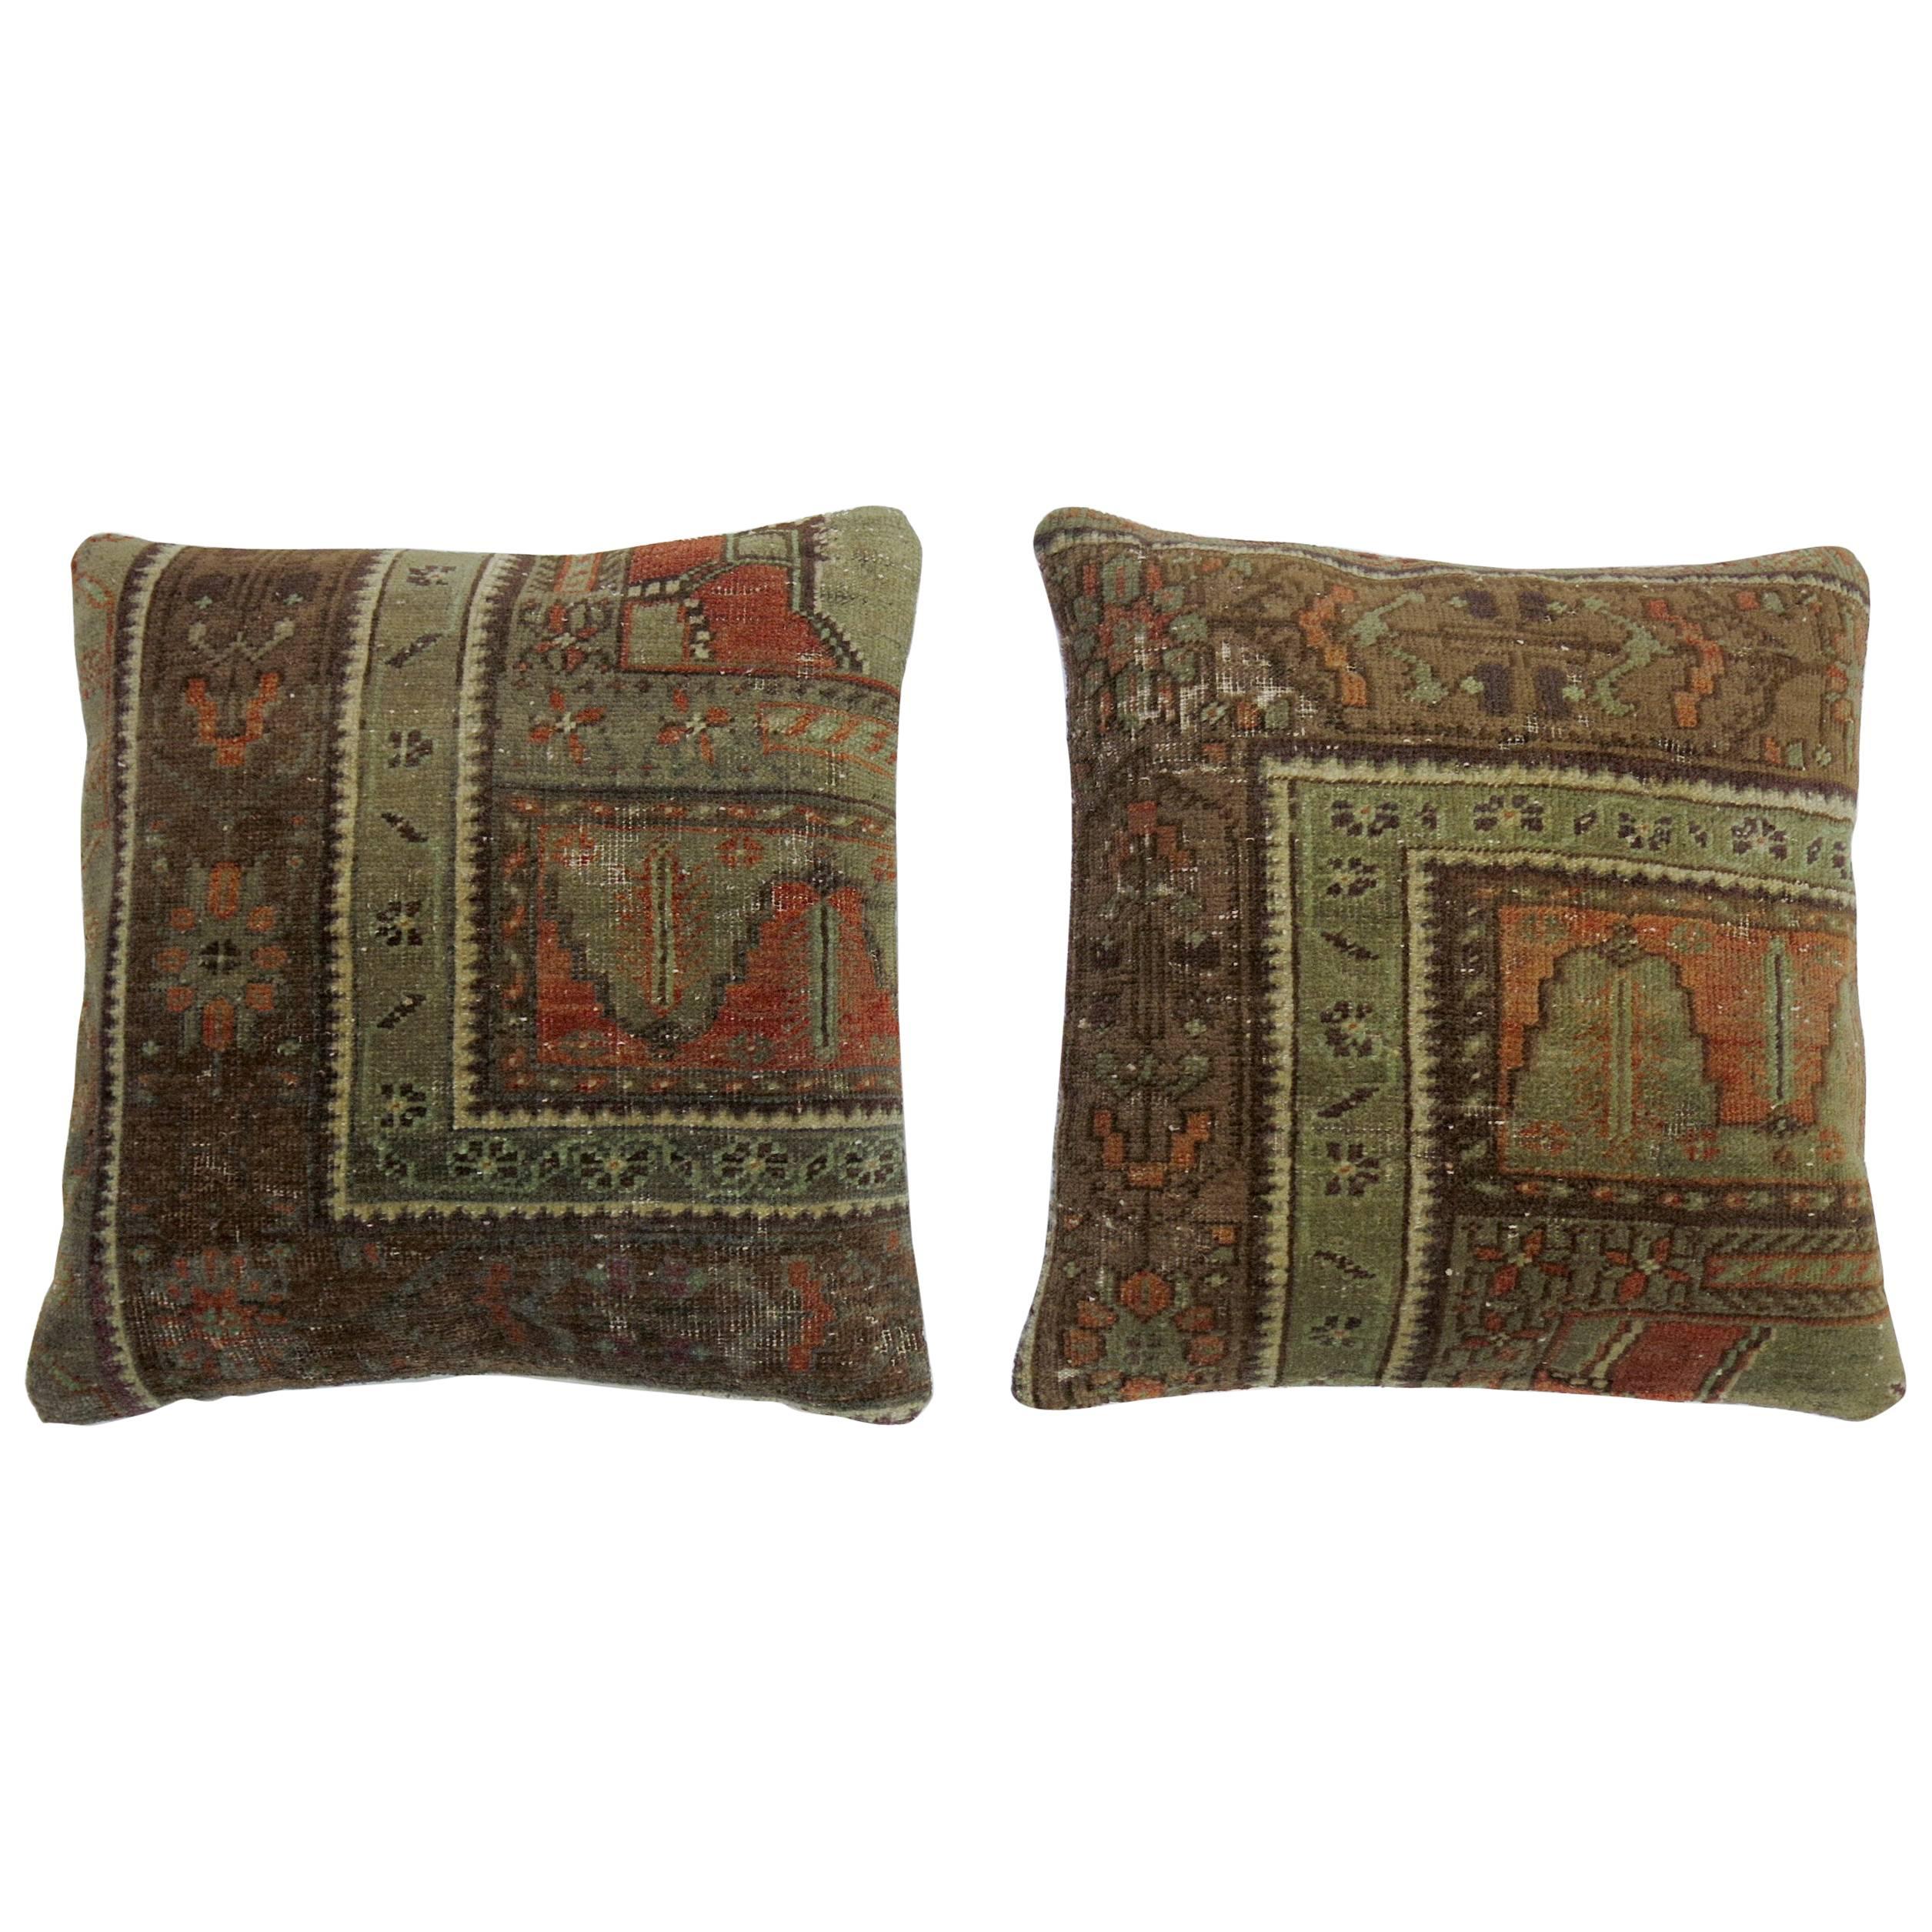 Pair of Turkish Rug Pillows